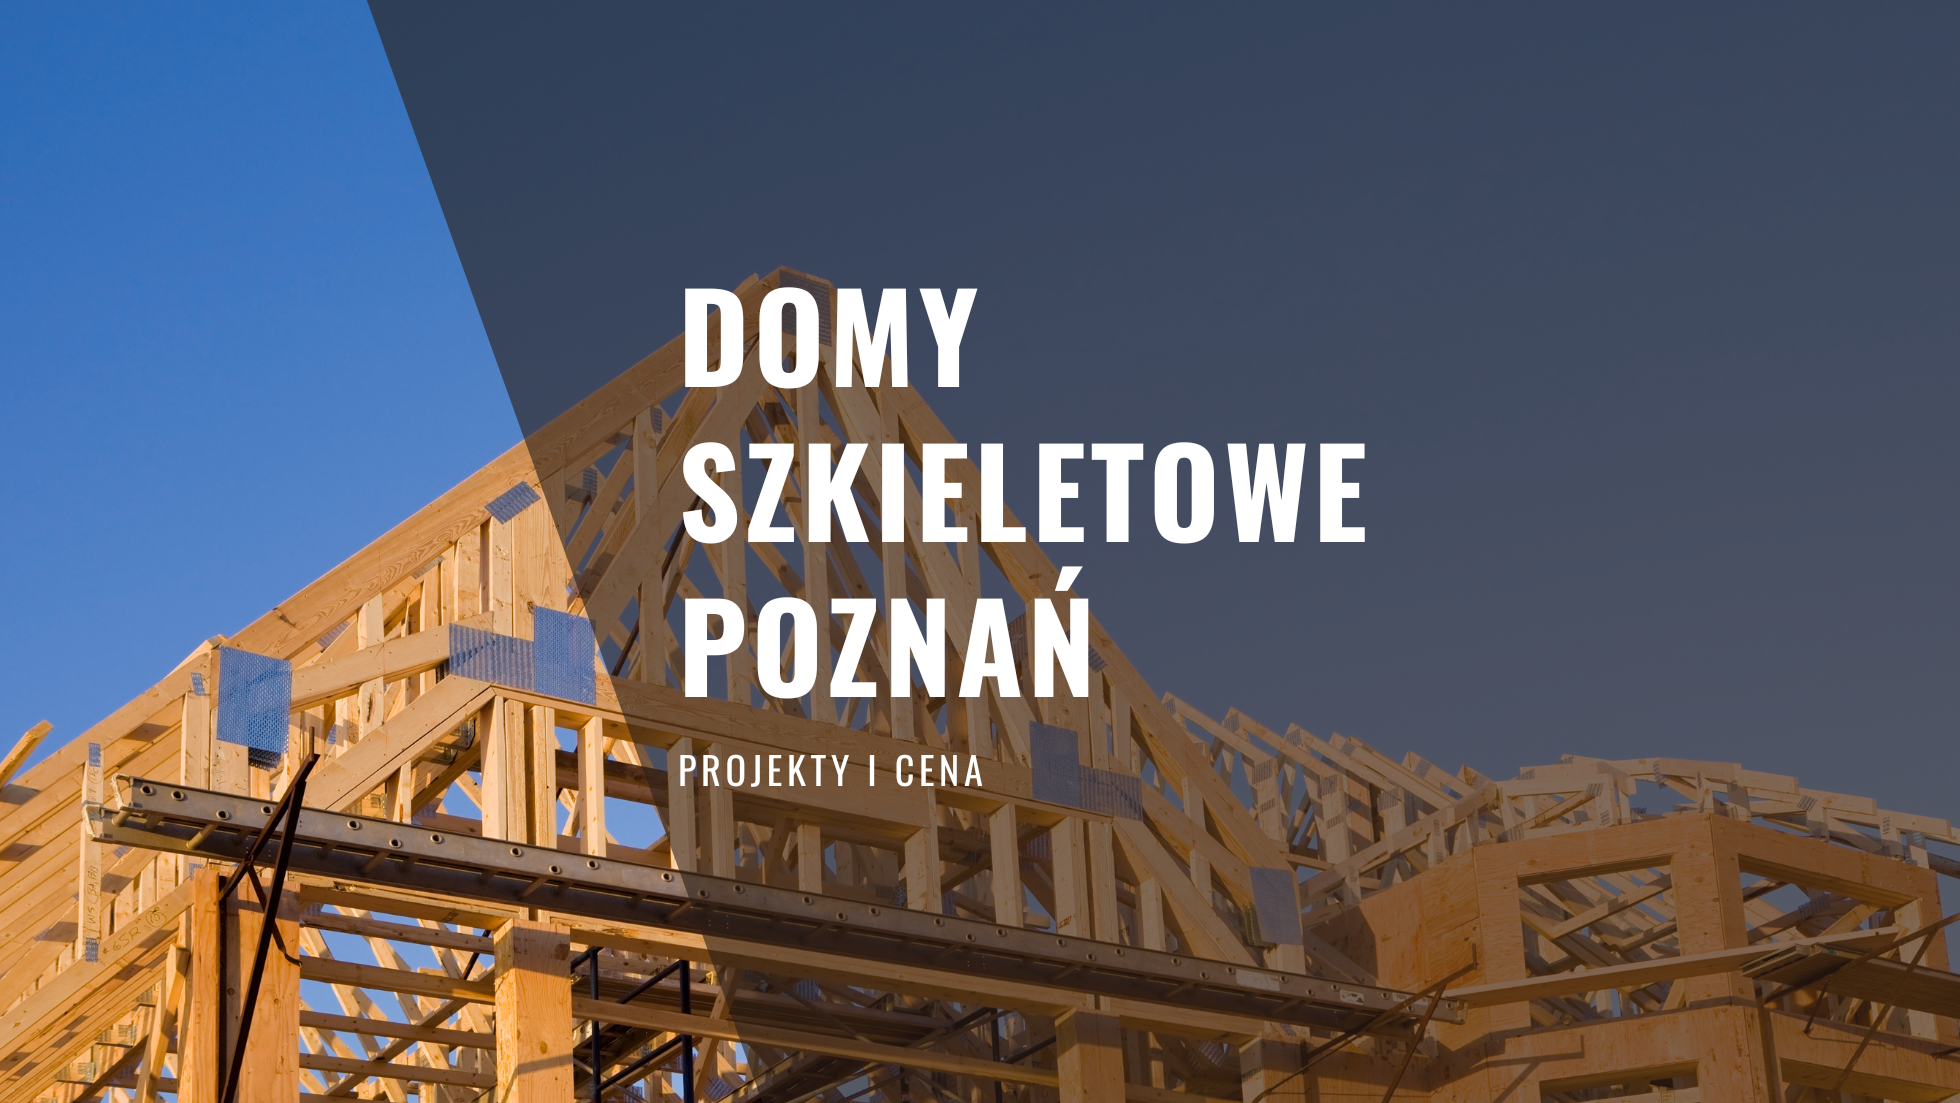 Domy szkieletowe Poznań